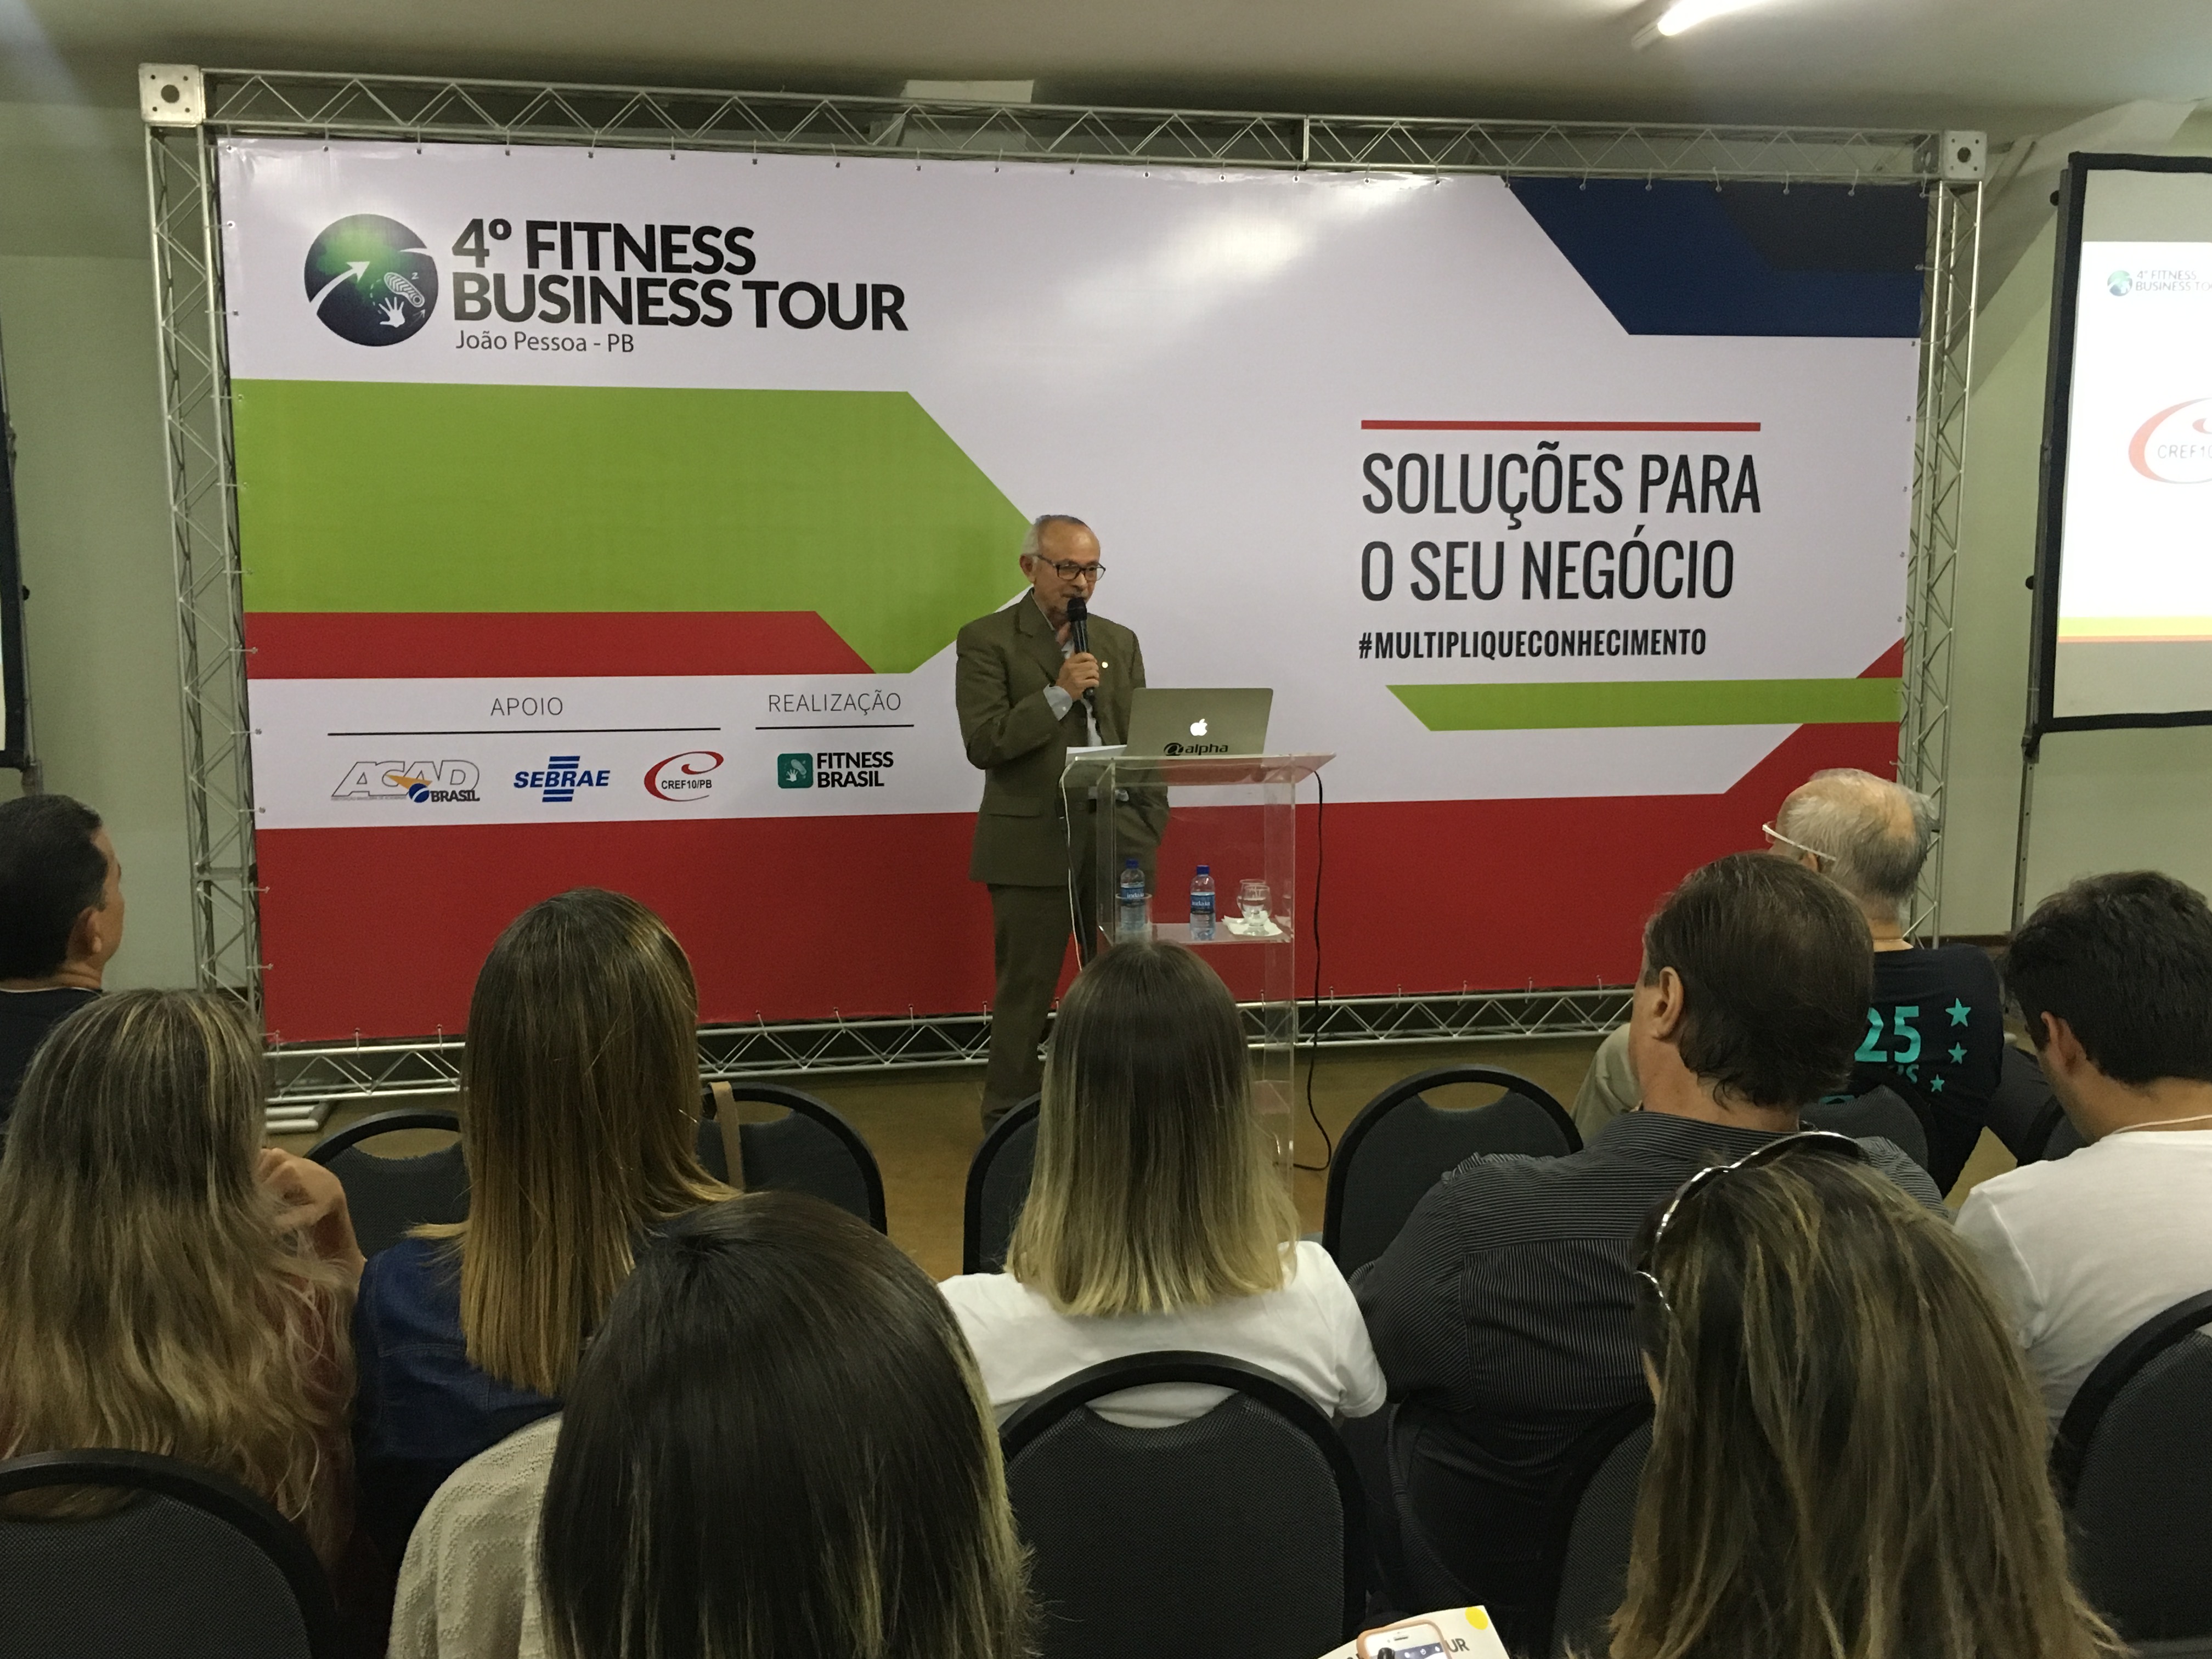 4º Fitness Business Tour - João Pessoa